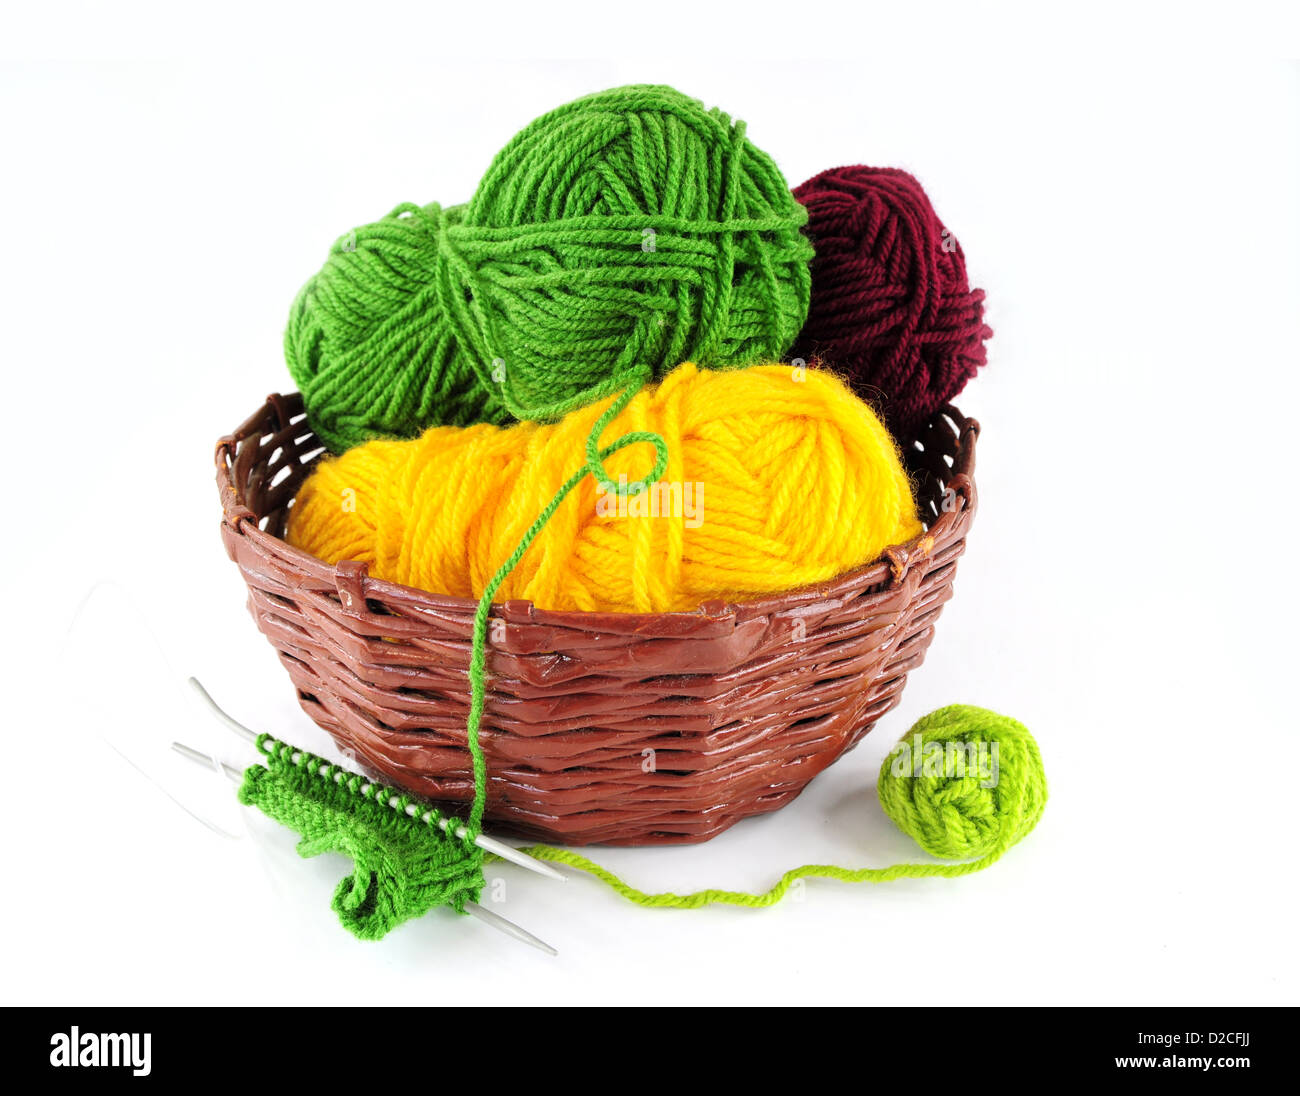 Hilados coloridos y agujas para tejer en cesta de mimbre Foto de stock